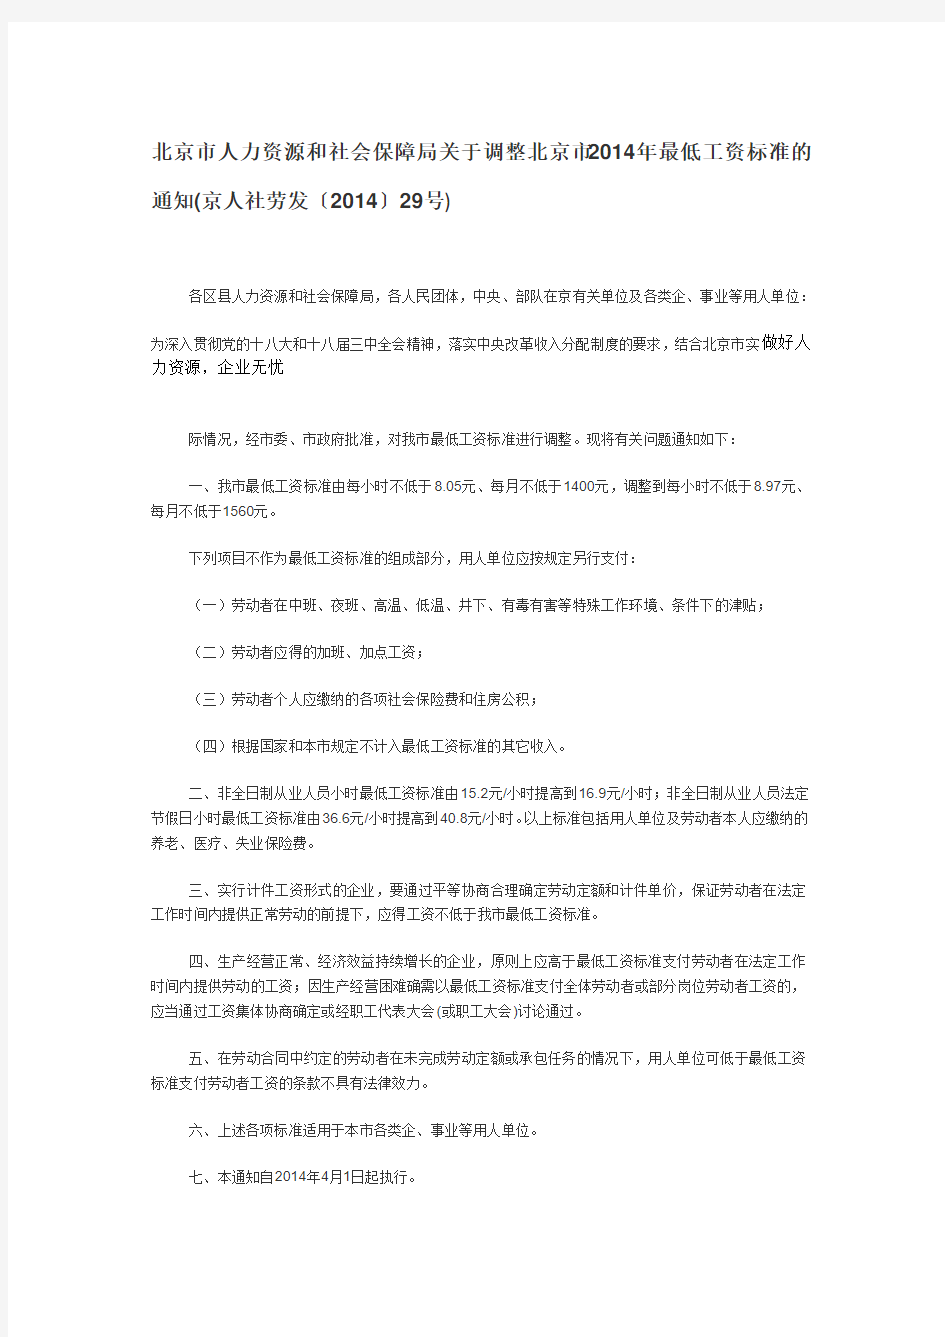 北京市人力资源和社会保障局关于调整北京市2014年最低工资标准的通知